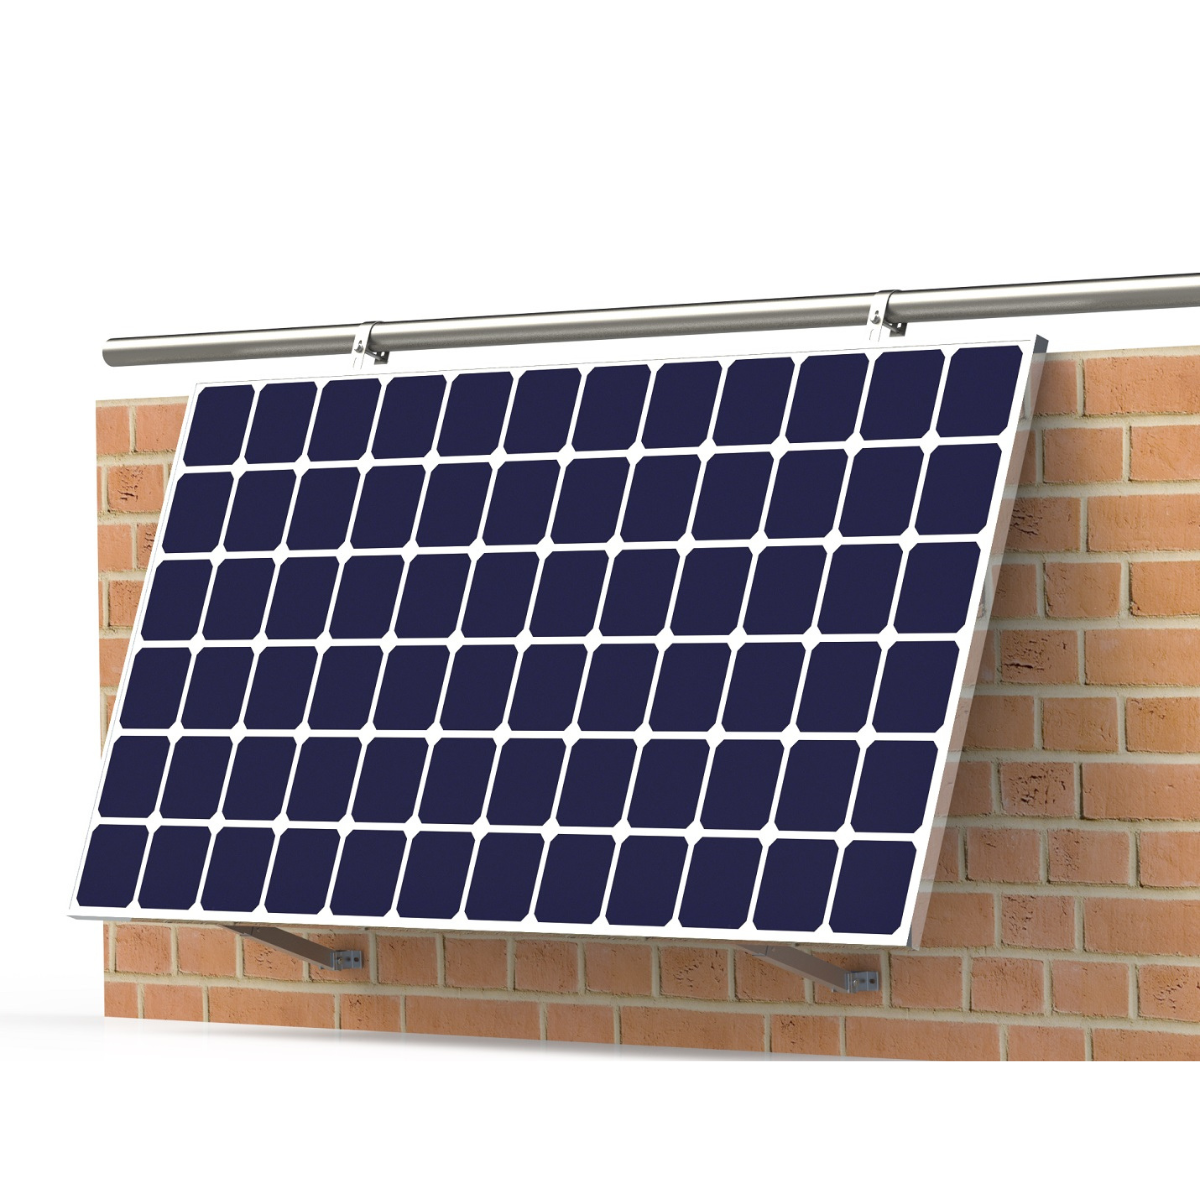 ALLin Balkon SOLAR SMARTEC Solar Halterungs-Set